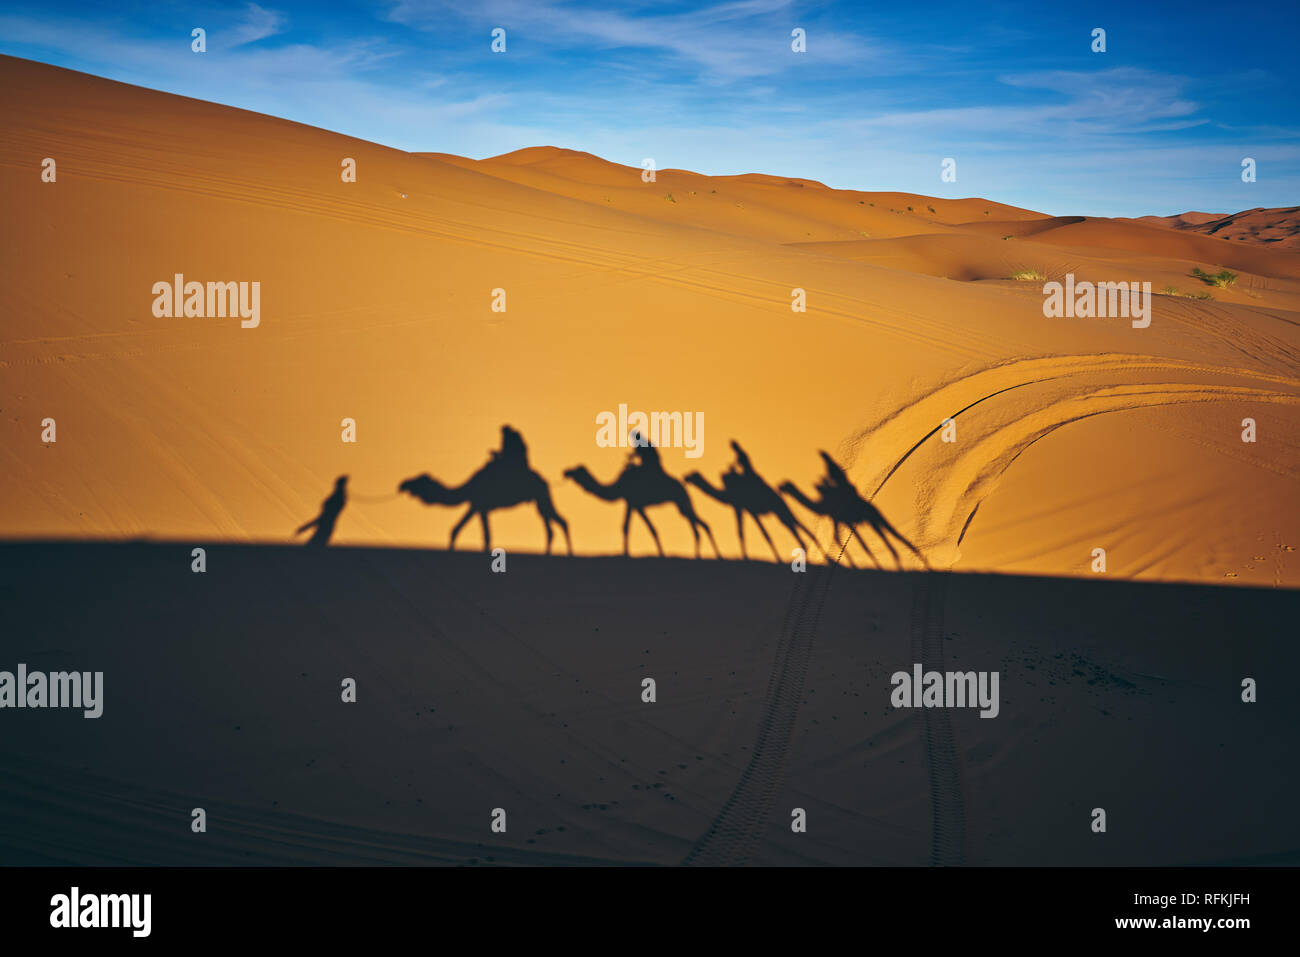 Camel caravan and shadows in desert Erg Chebbi, near town Merzouga, Sahara Desert, Morocco Stock Photo